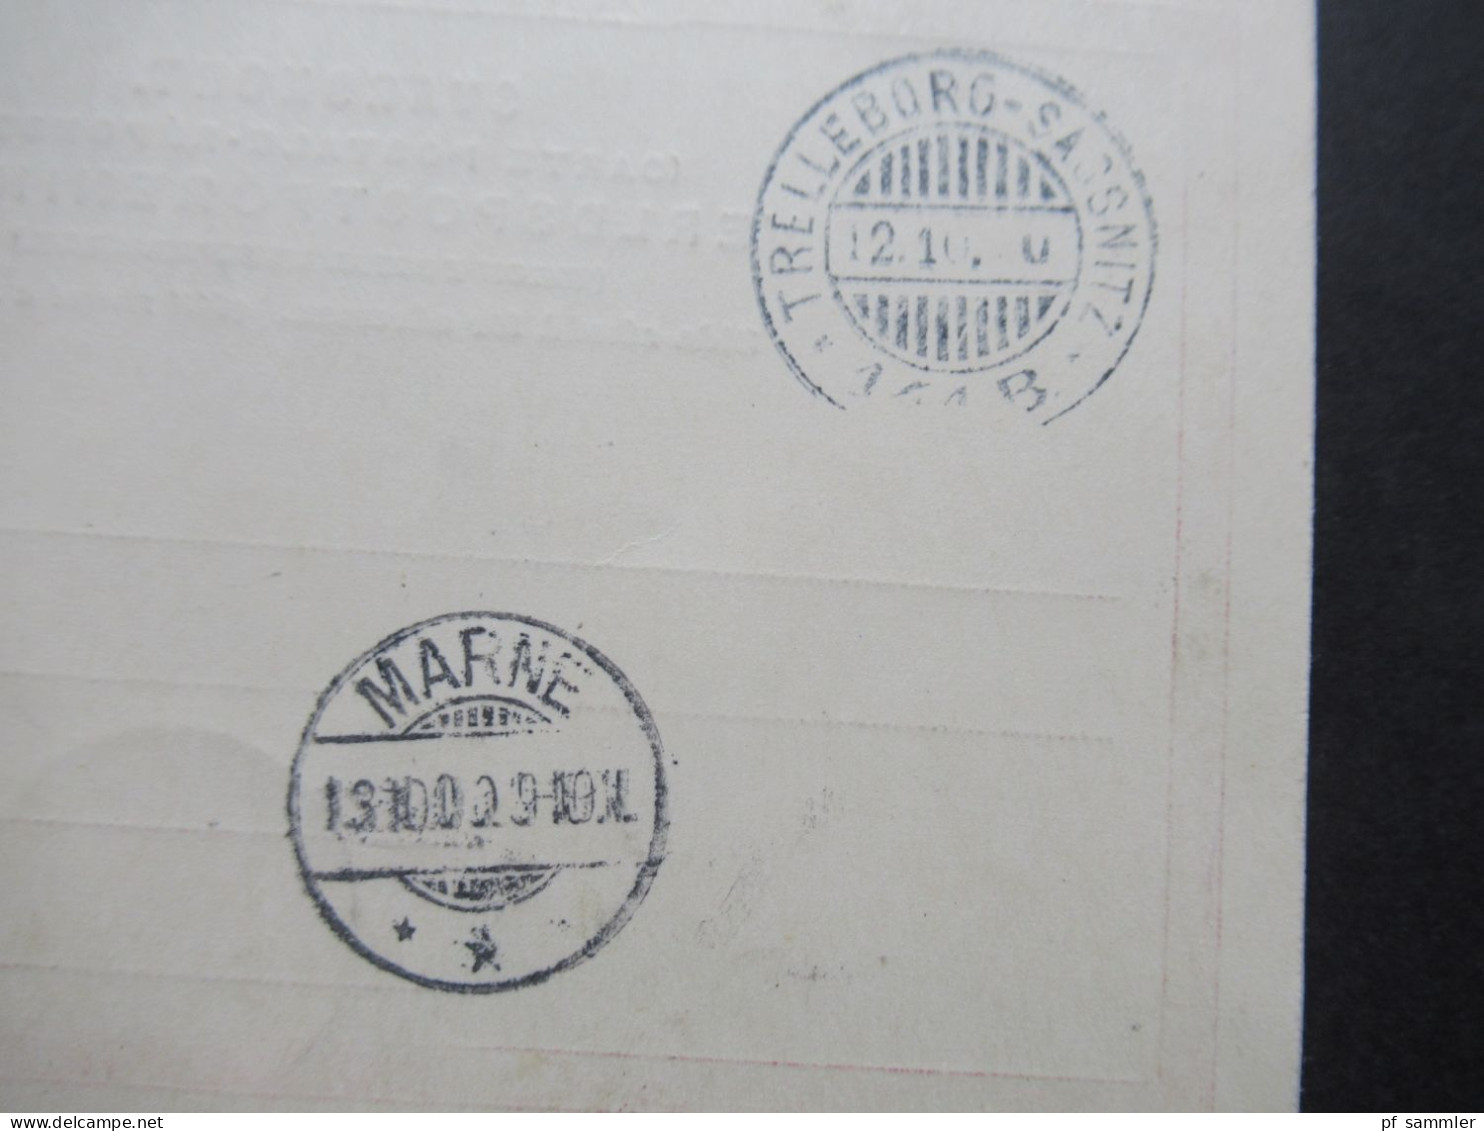 Schweden 1900 Ganzsache / Doppelkarte Tio Öre Frageteil gestempelt Helsingborg - Braunschweig weitergeleitet nach Marne